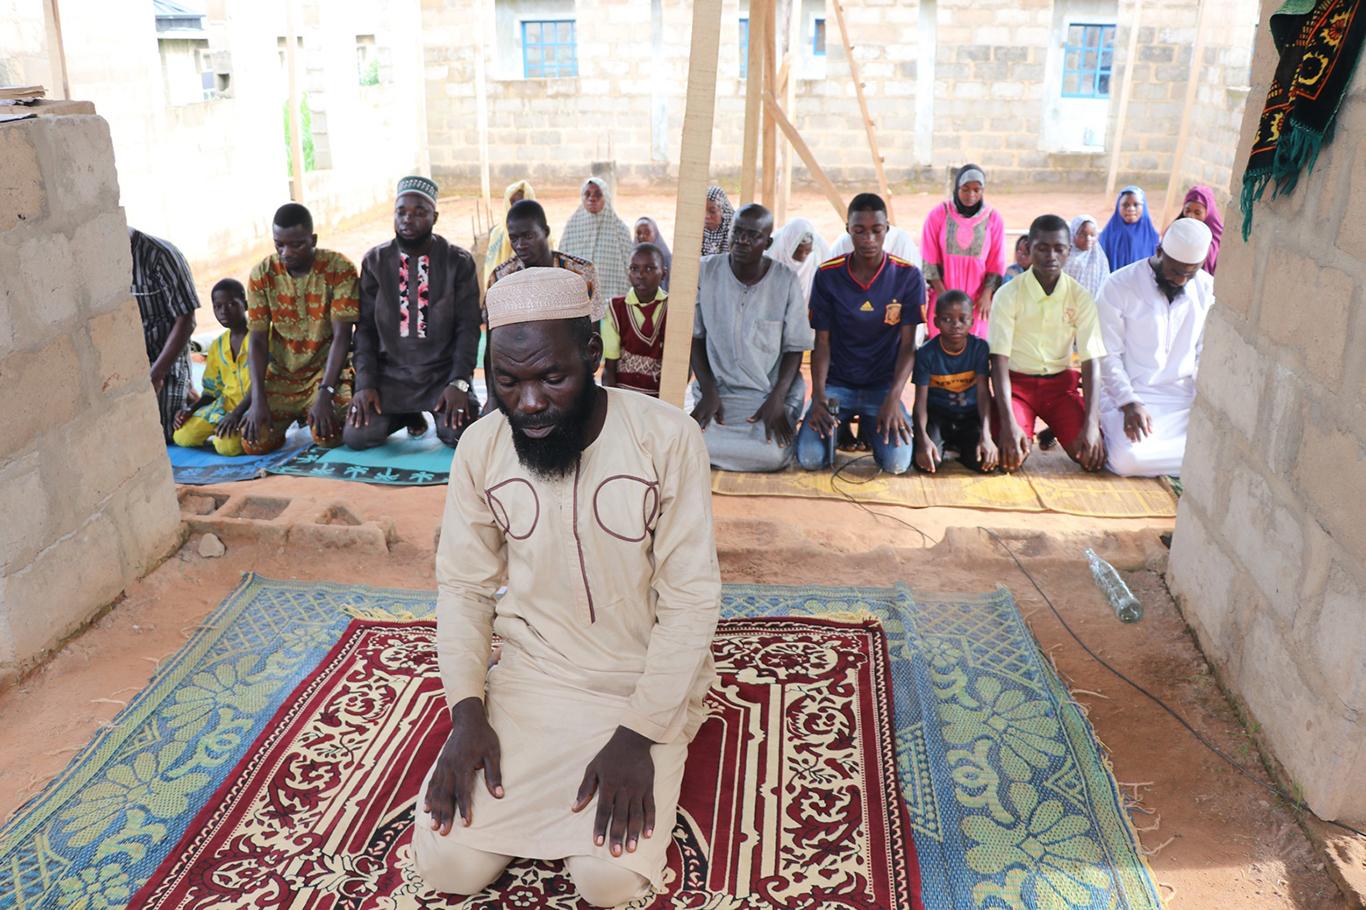 "Nijerya’daki Müslümanların finansman desteğine ihtiyaçları var"